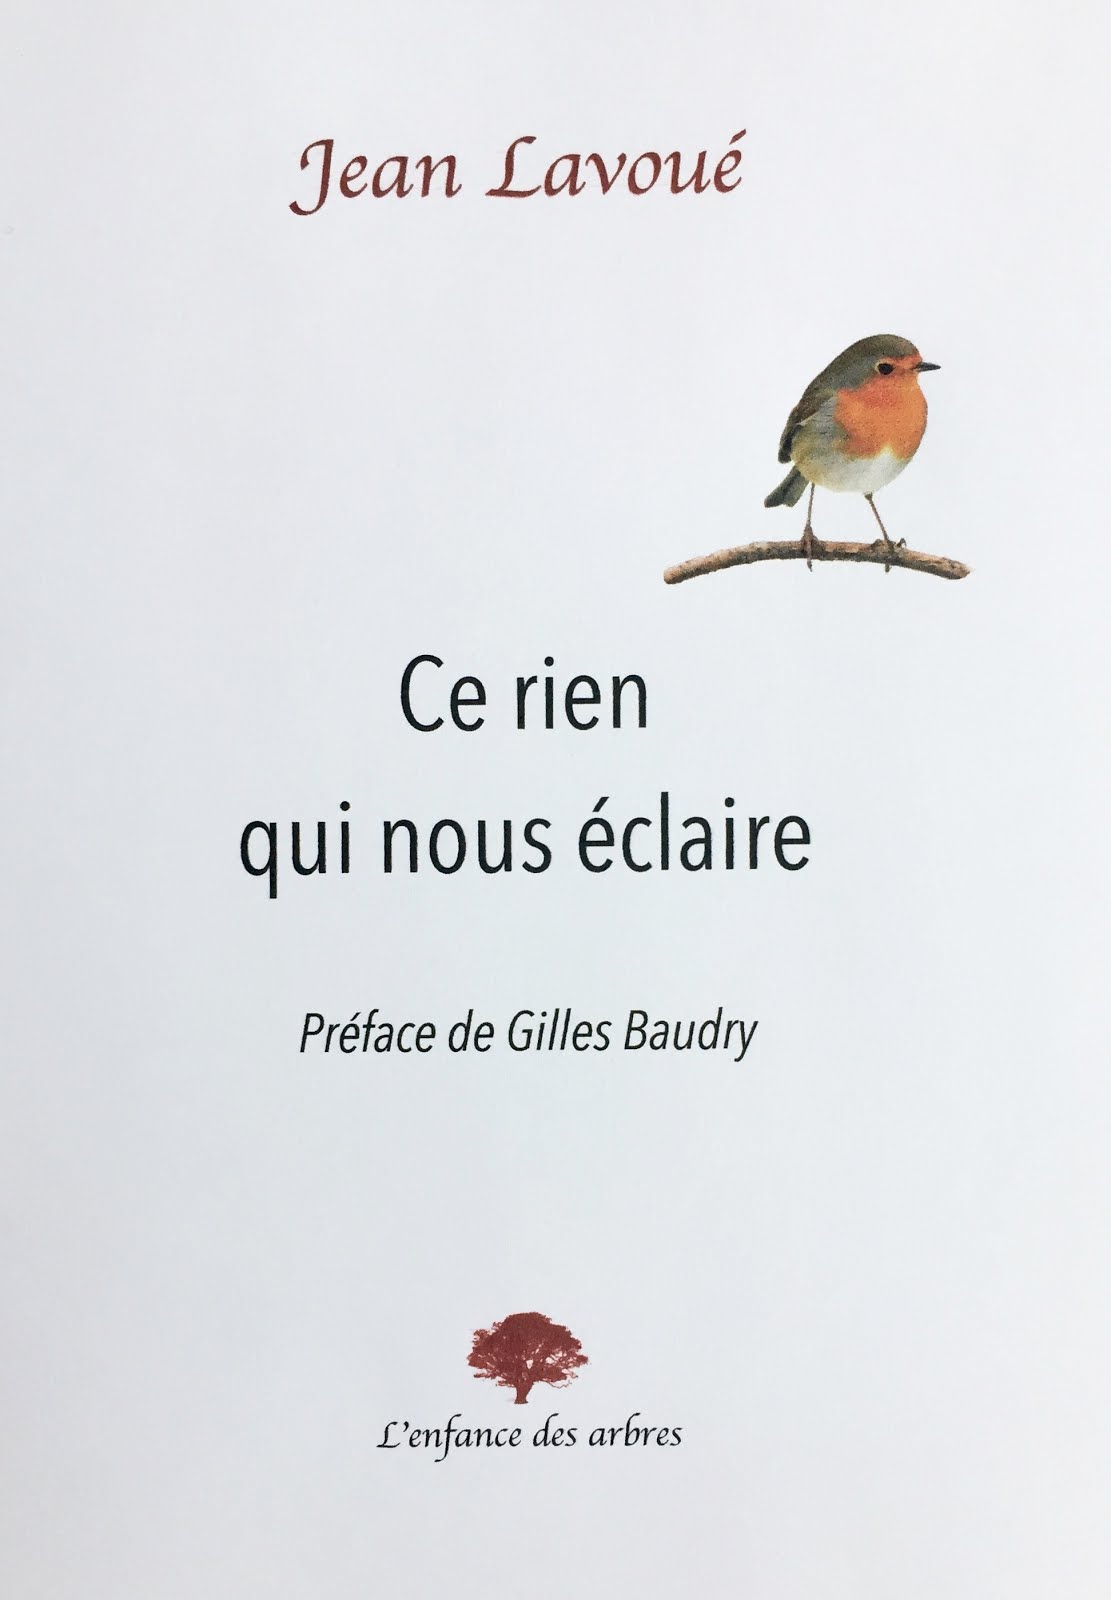 Jean LAVOUÉ, Ce rien qui nous éclaire, L’enfance des arbres, 153 pages, 13 euros